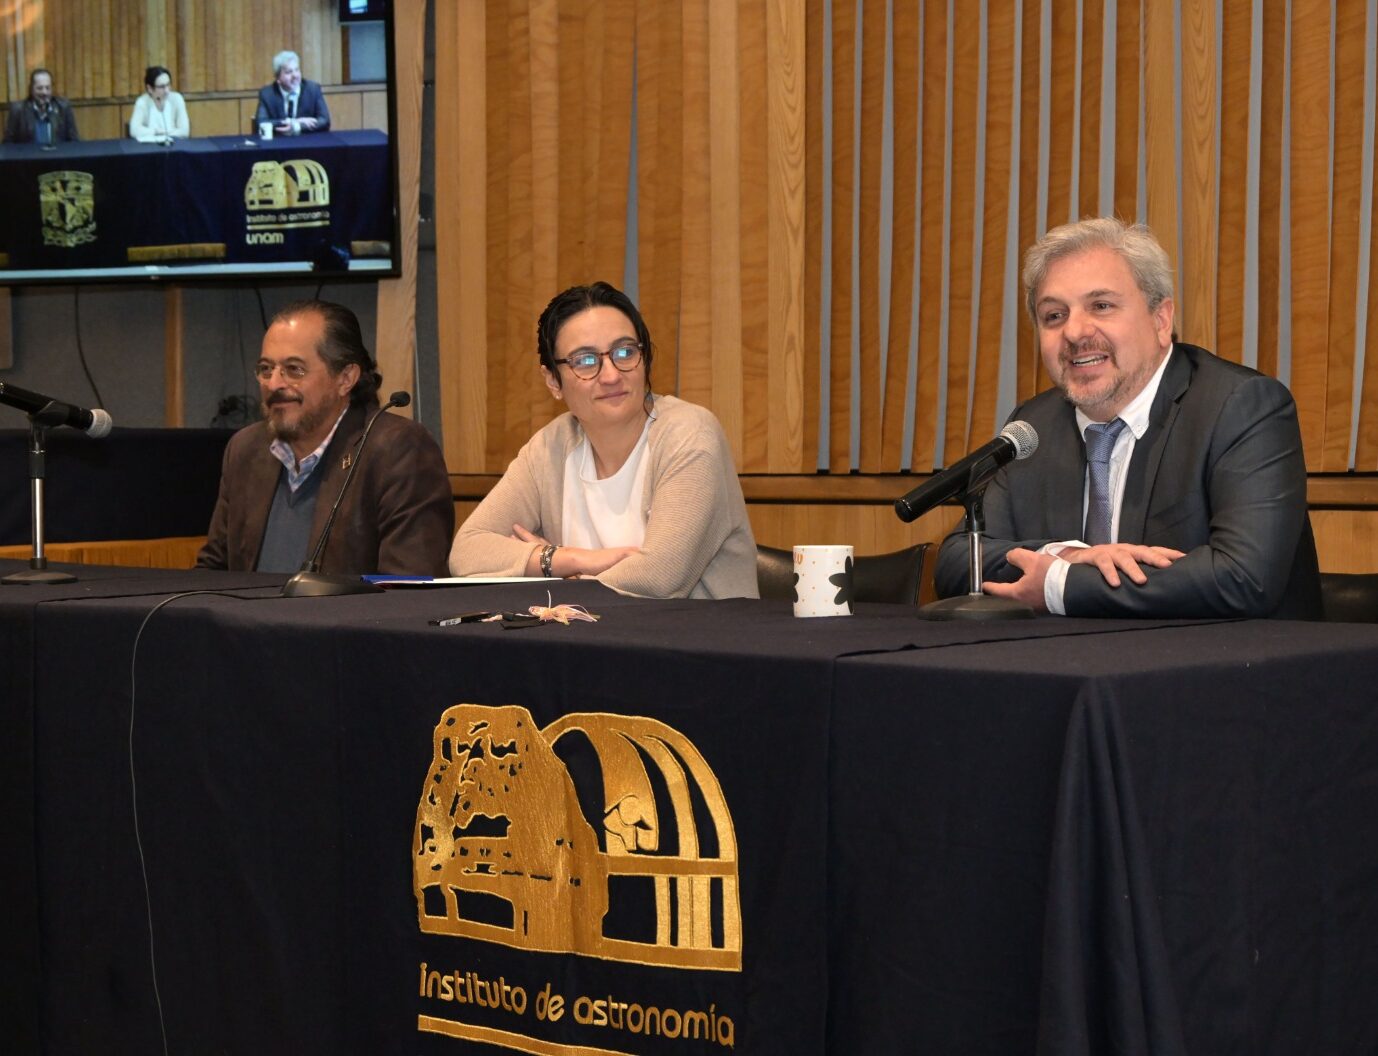 La Junta de Gobierno de la UNAM designó nuevo director del Instituto de Astronomía.